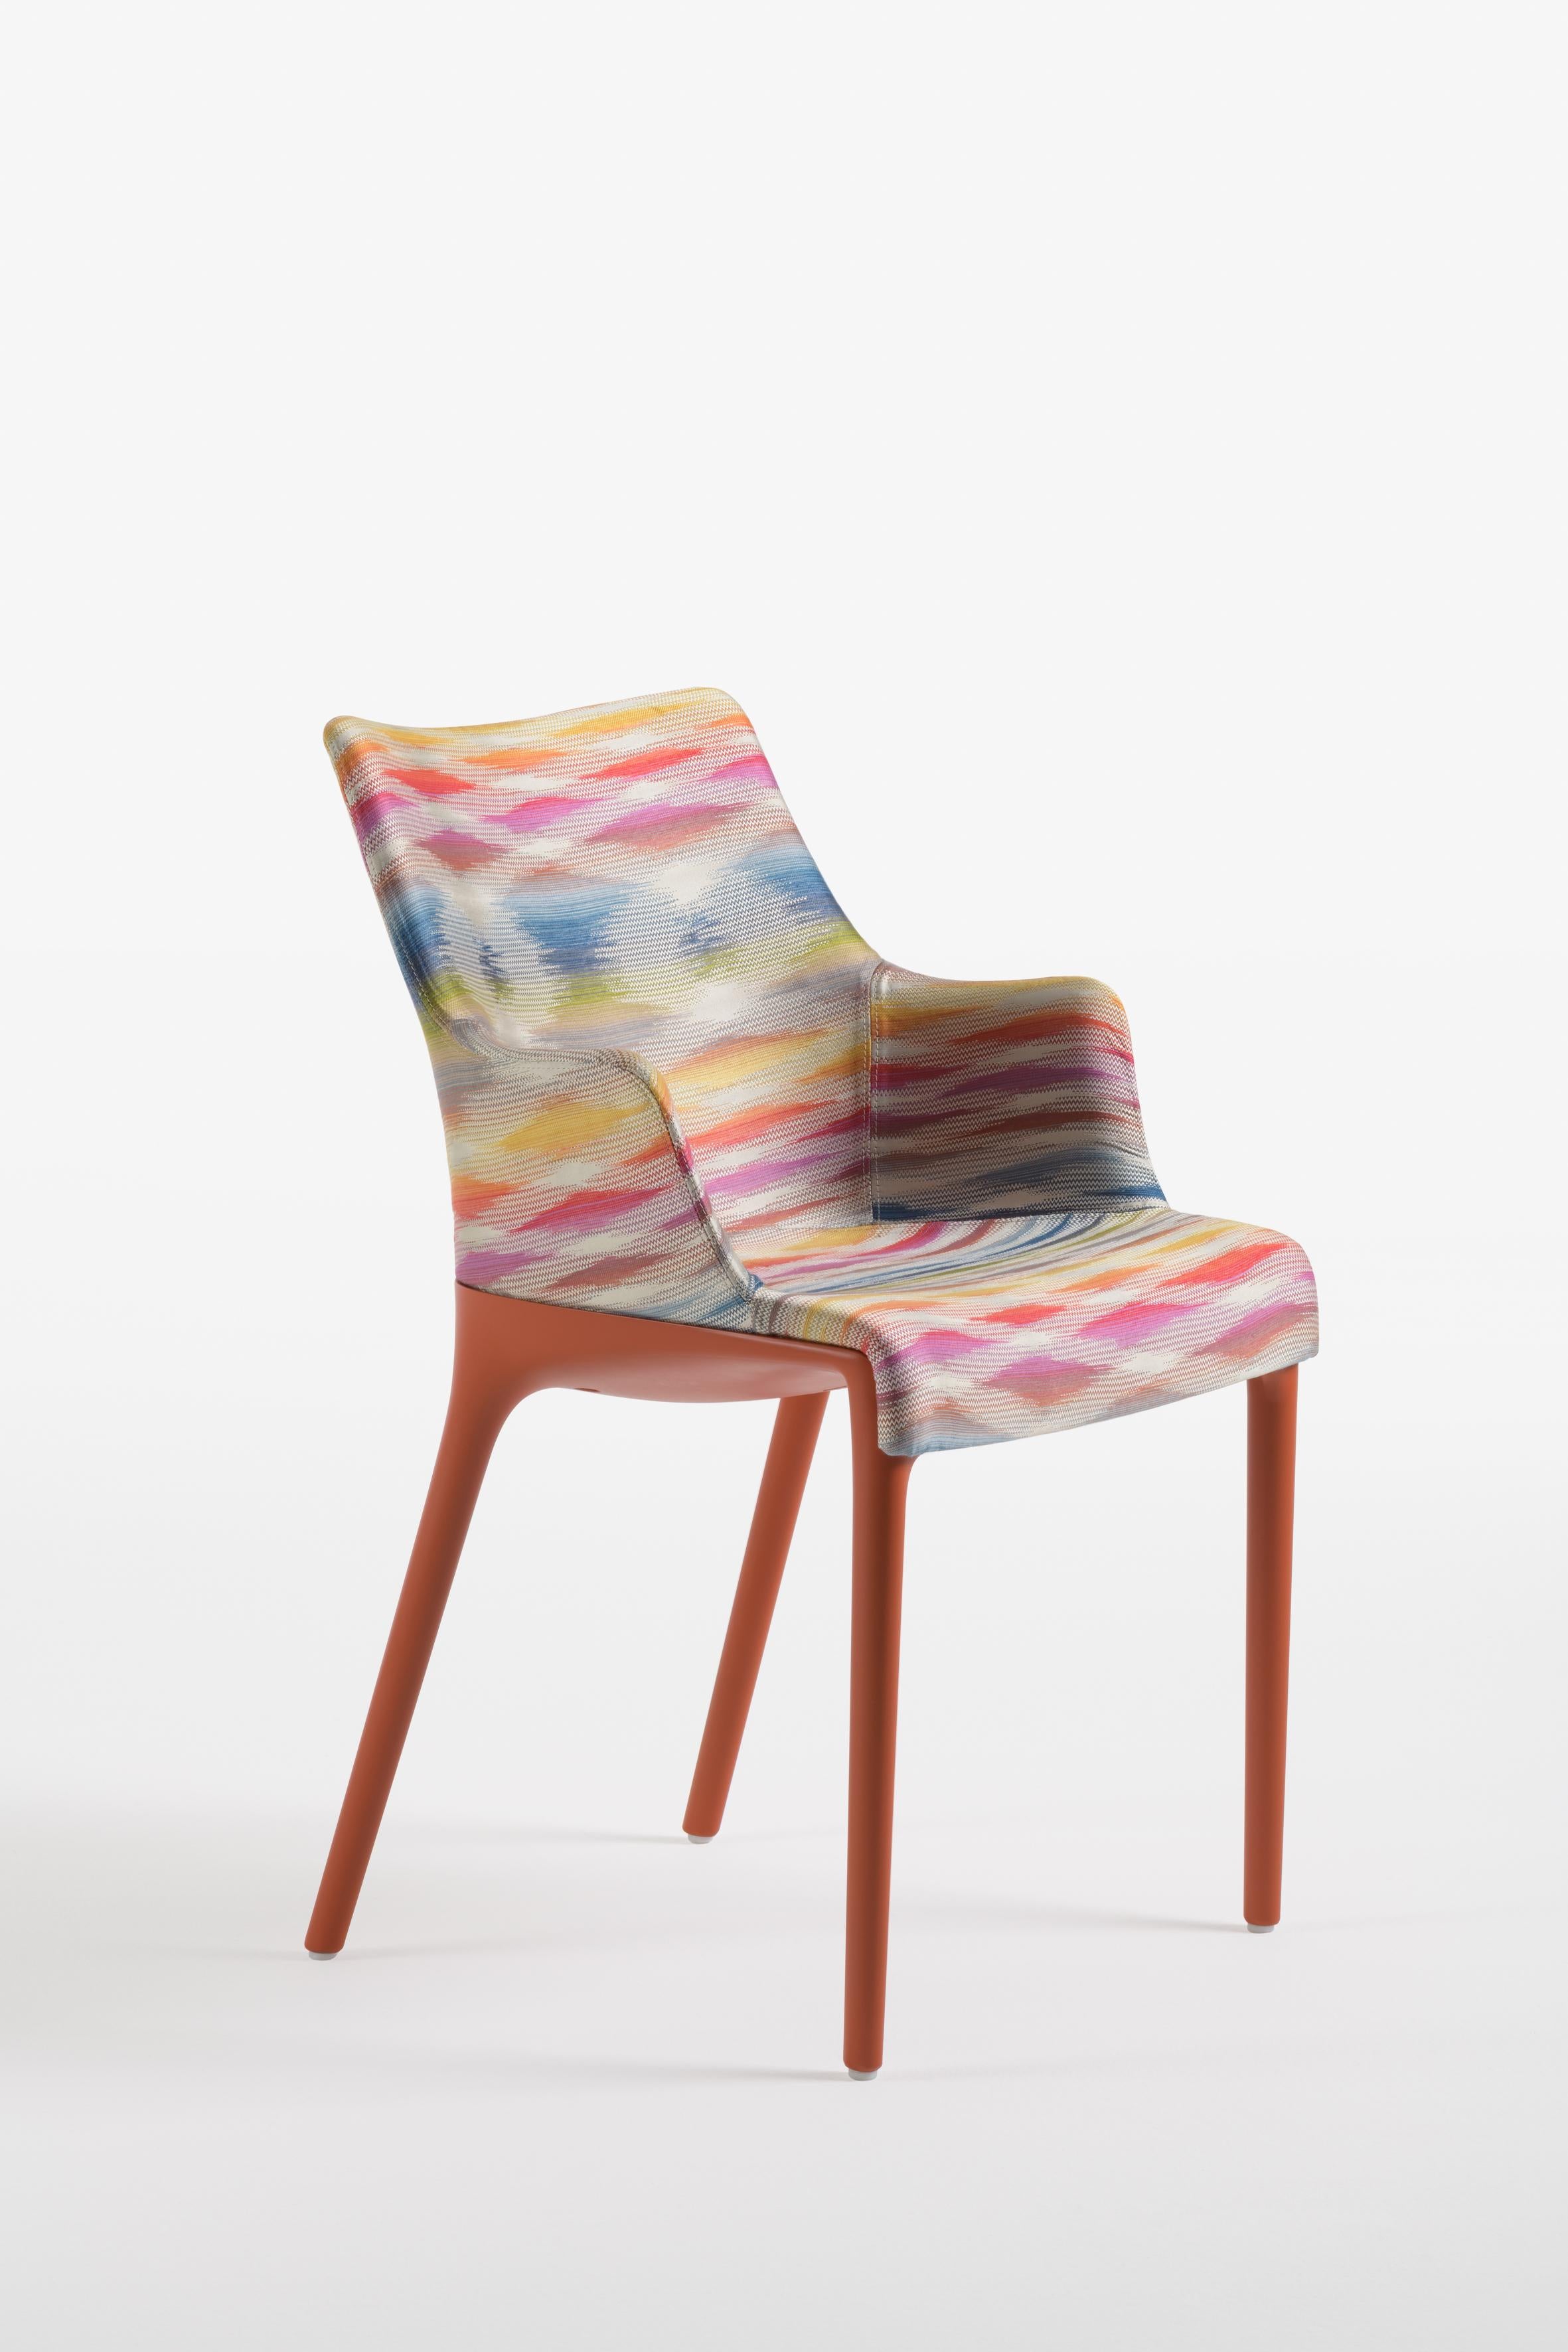 L'Elegance et son charme discret. Philippe Starck a repensé les lignes essentielles du style italien avec une chaise intemporelle qui allie l'univers de la haute couture au bon ton. Signes distinctifs : raffinement et discrétion, douceur et